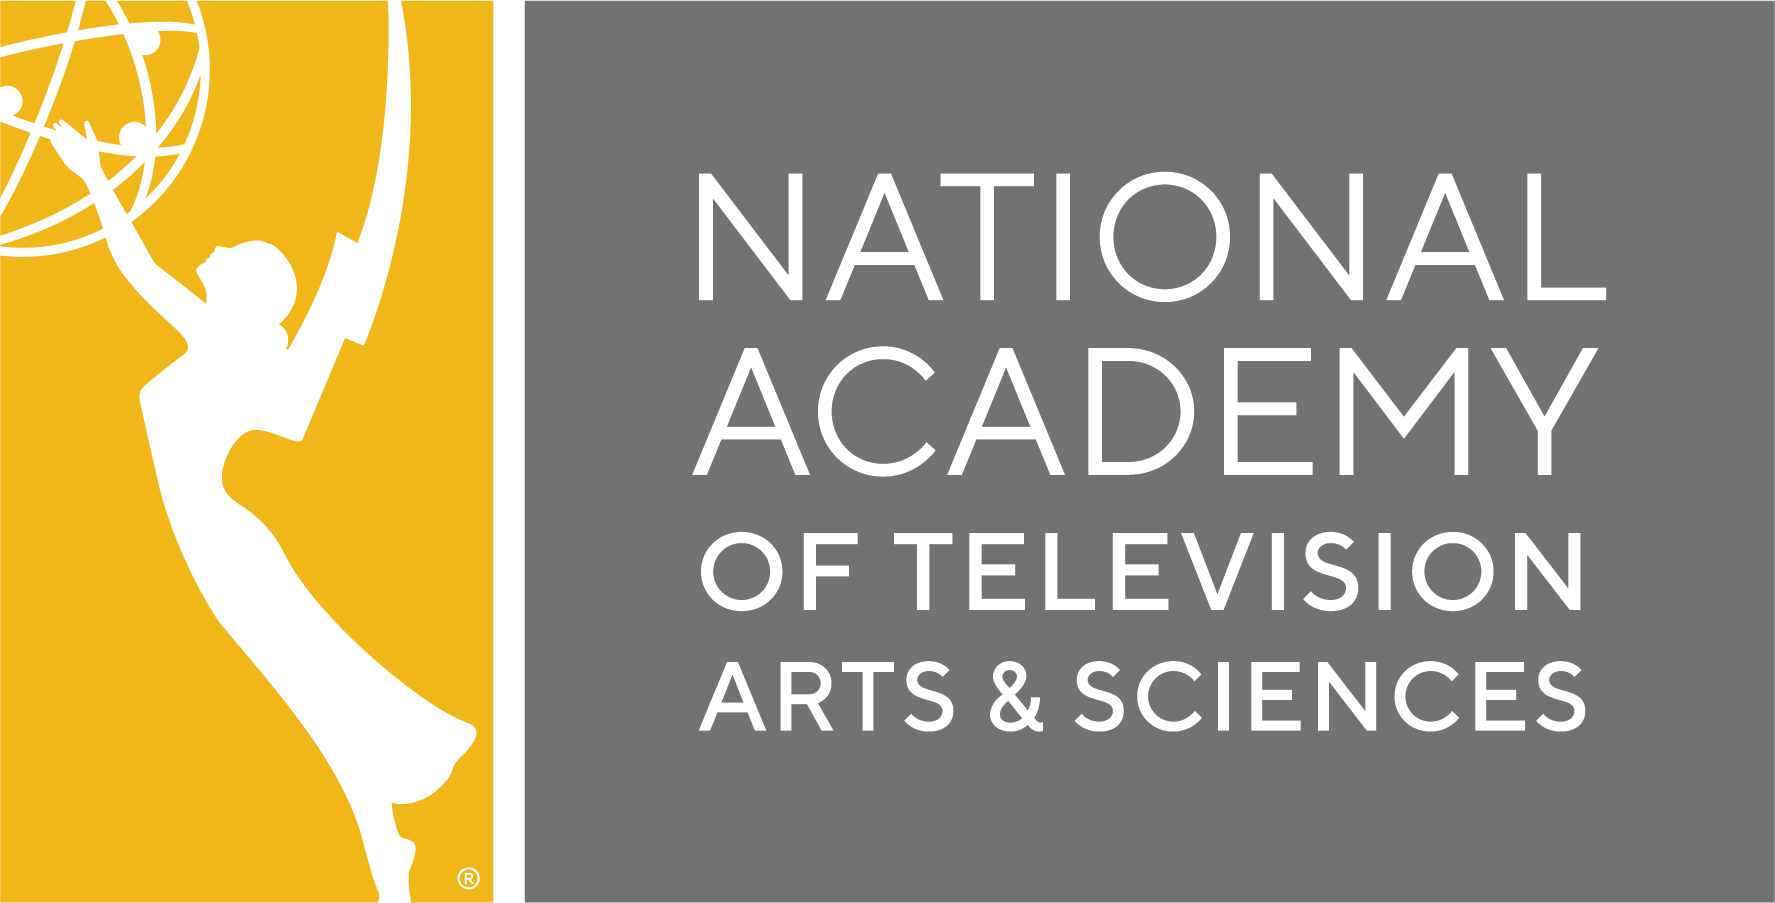 Academy of Television Arts & Sciences